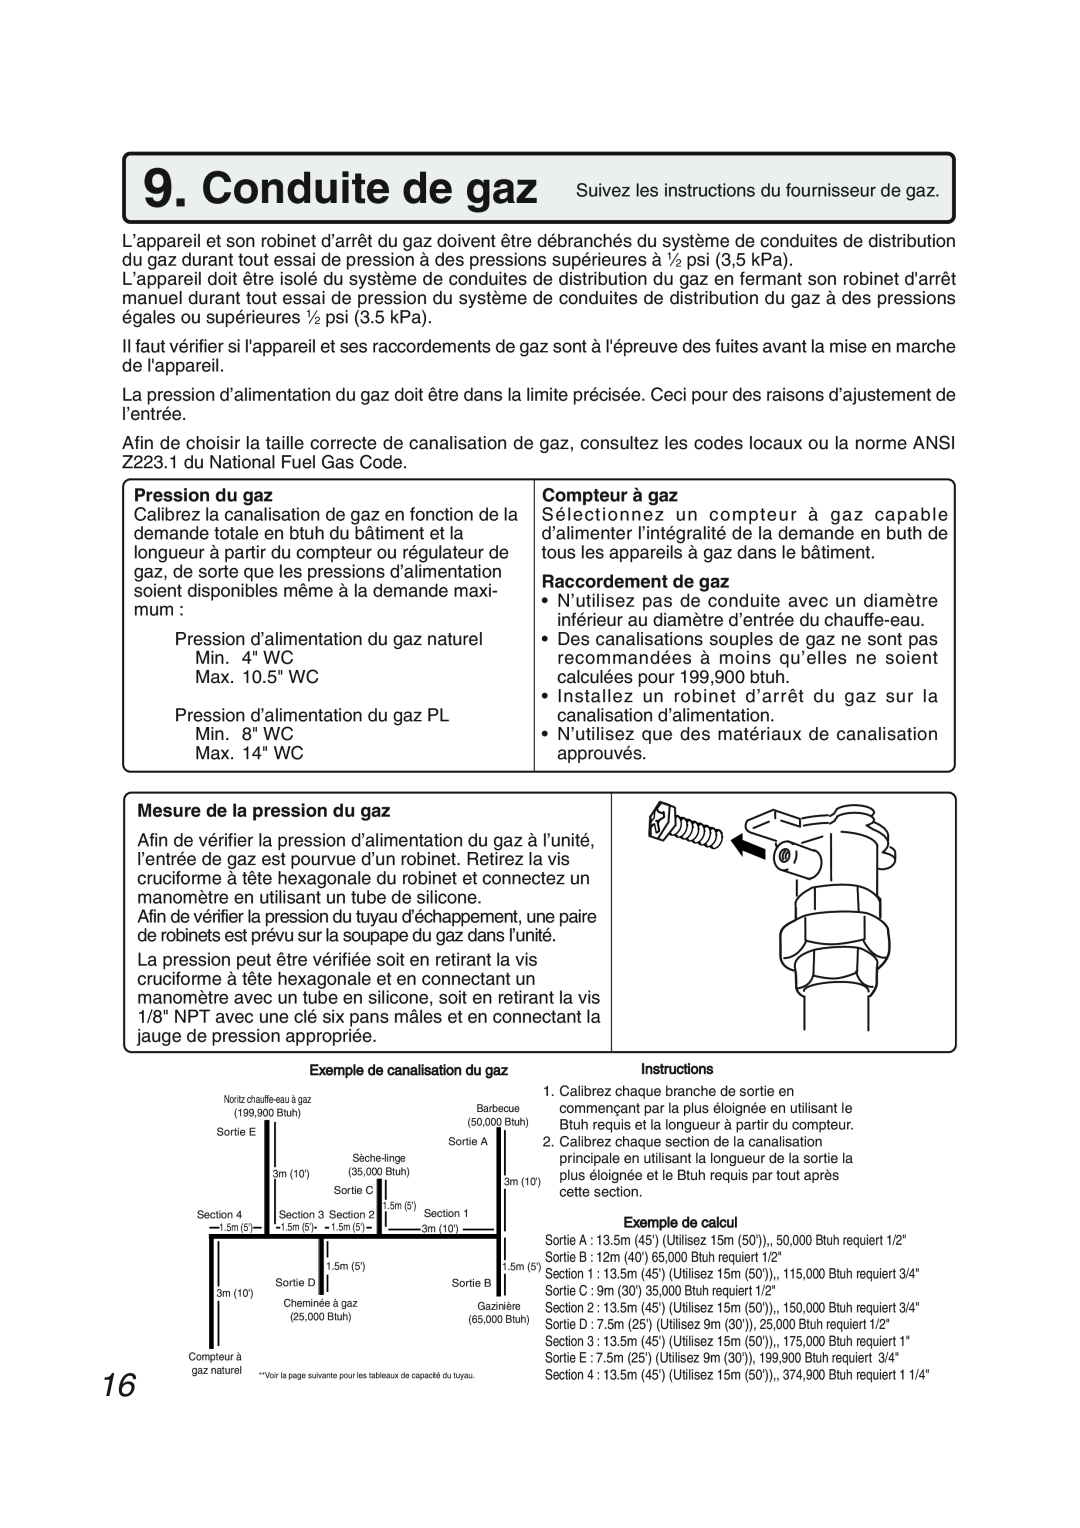 Pentax N-0751M-OD installation manual Pression du gaz, Mesure de la pression du gaz, Compteur à gaz, Raccordement de gaz 